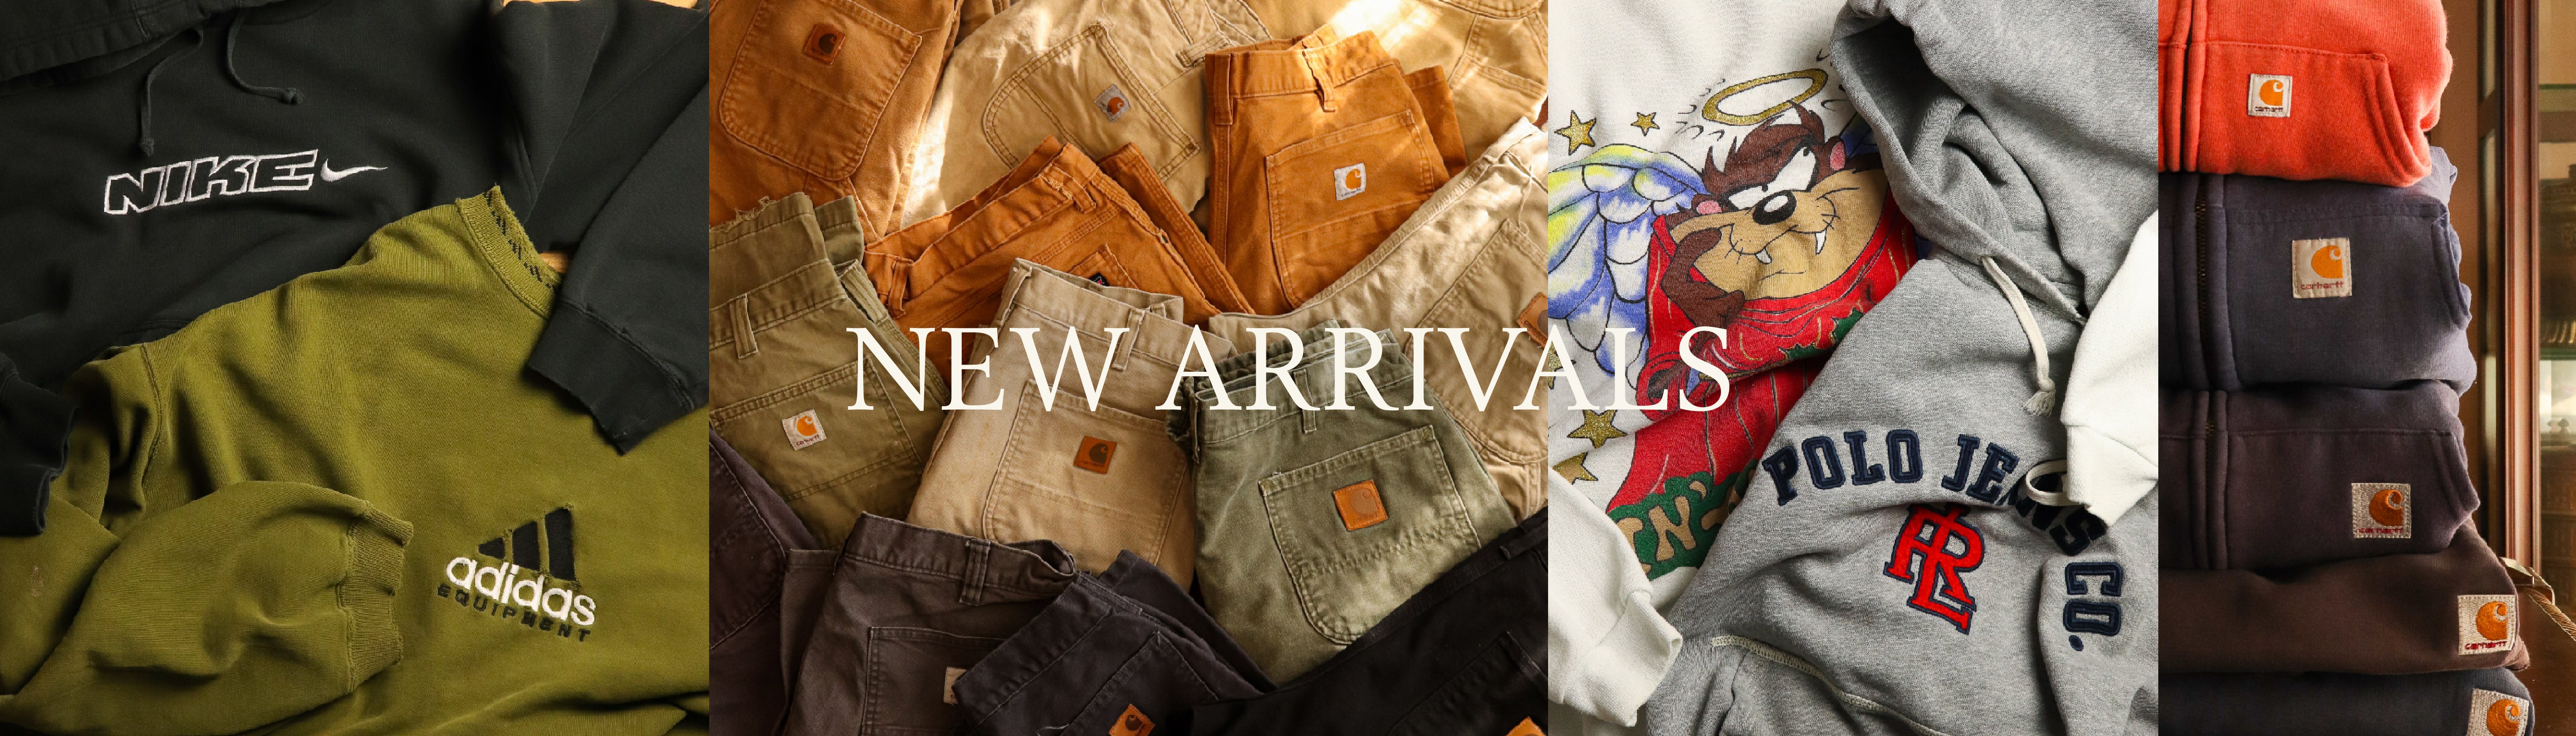 Premier Online Vintage Clothing Shop | New Arrivals | Proper Vintage ...